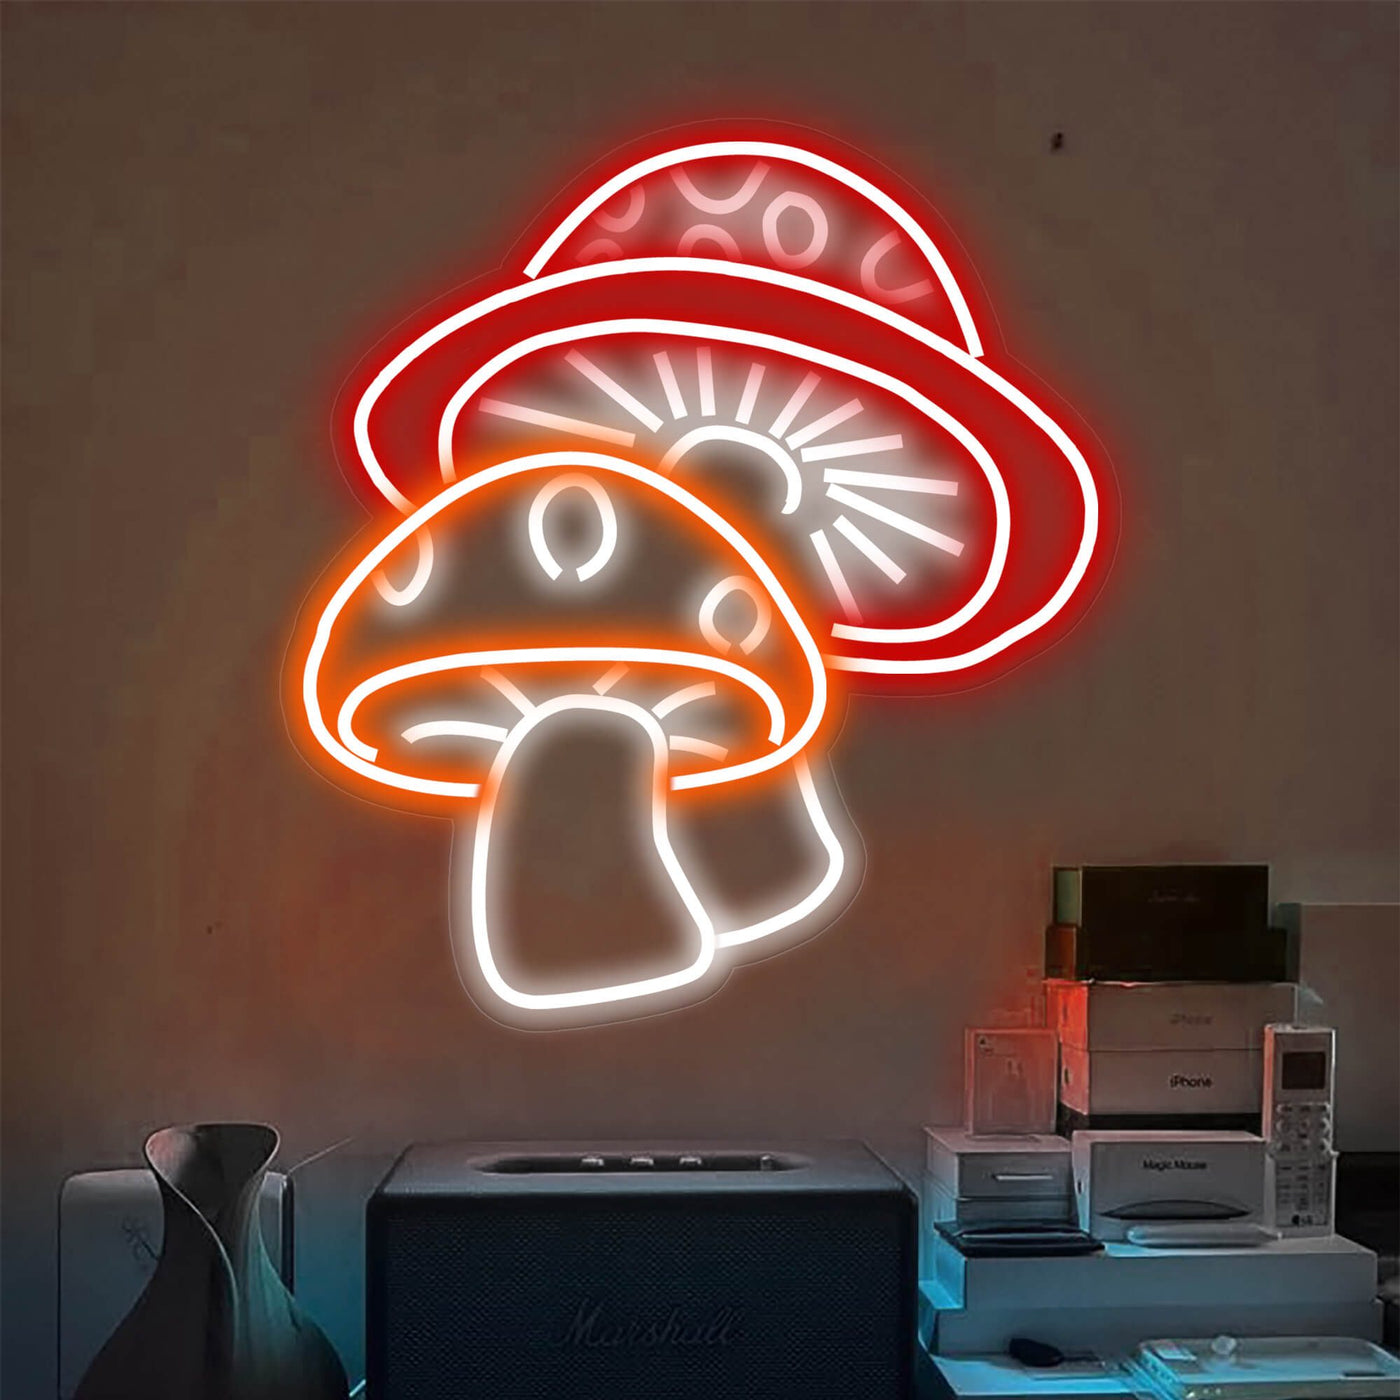 Two Aesthetic Mushroom Neon Sign Led Light red